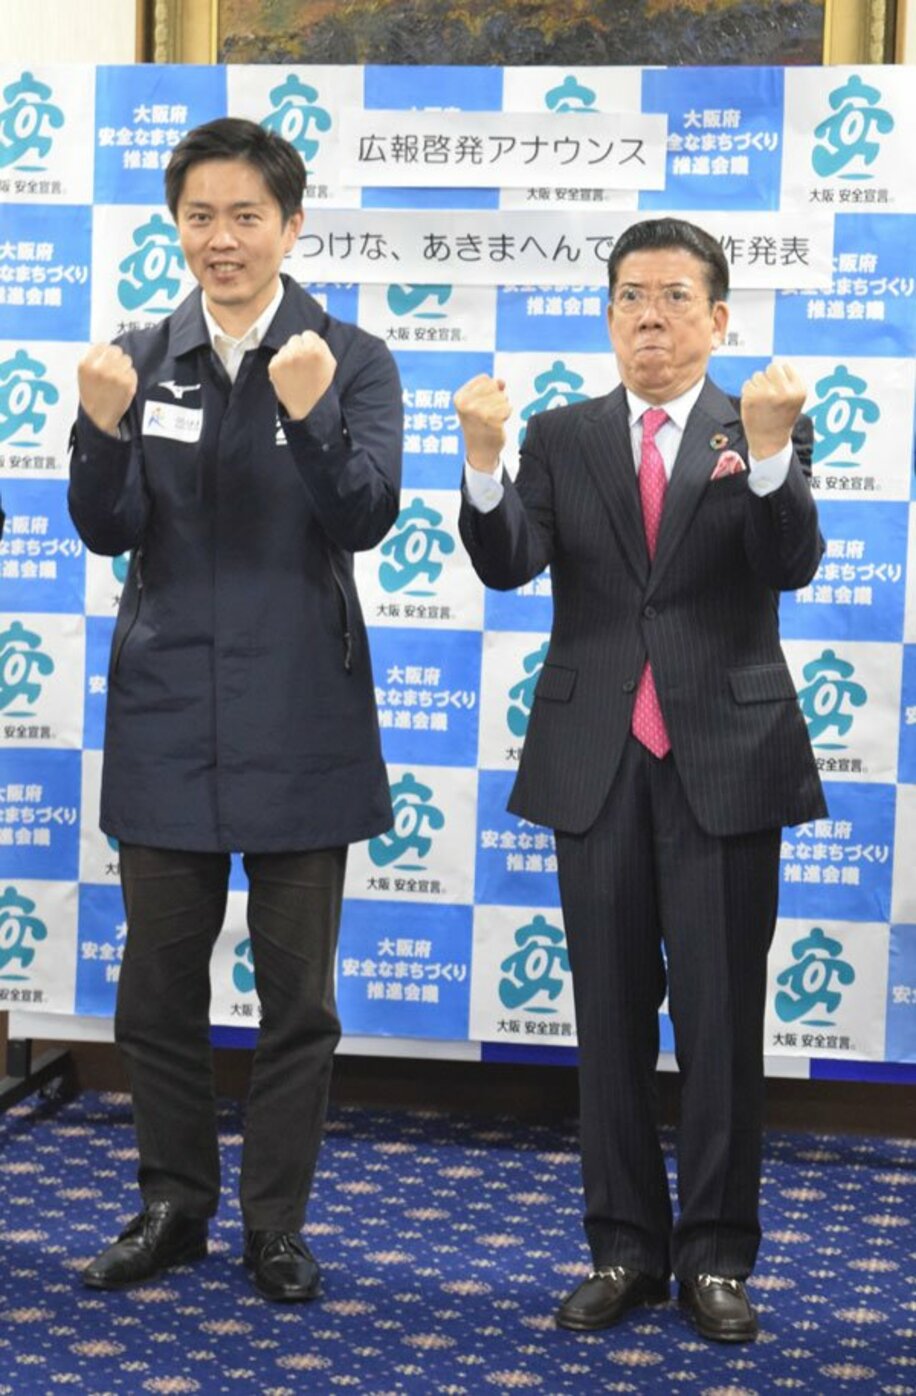  「小さなことからコツコツと」のポーズを取る西川きよし(右)と吉村府知事